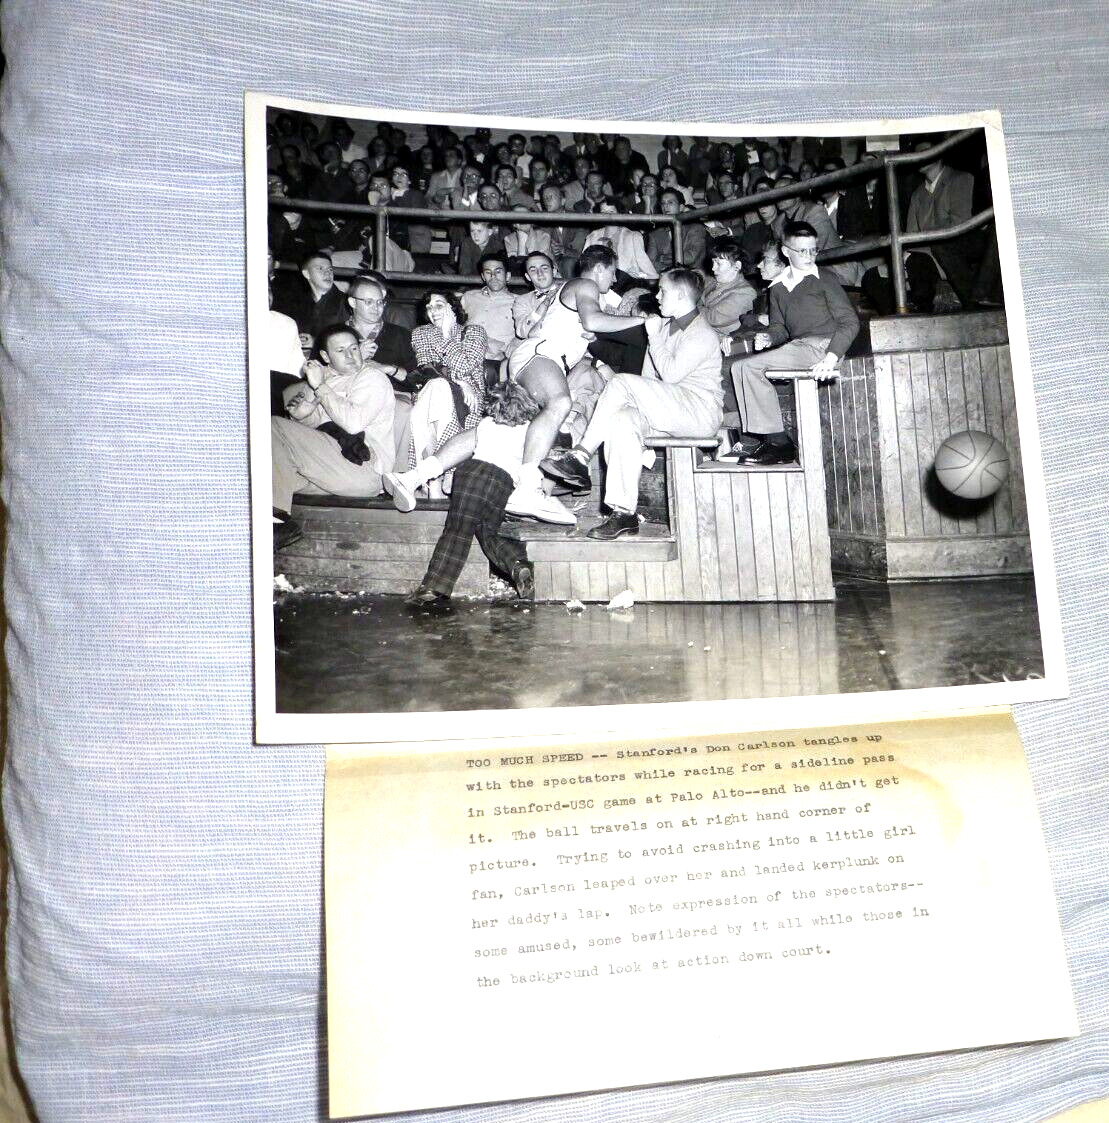 VINTAGE REAL PHOTO STANFORD USC BASKETBALL AVOID CRASHING LITTLE GIRL 1954